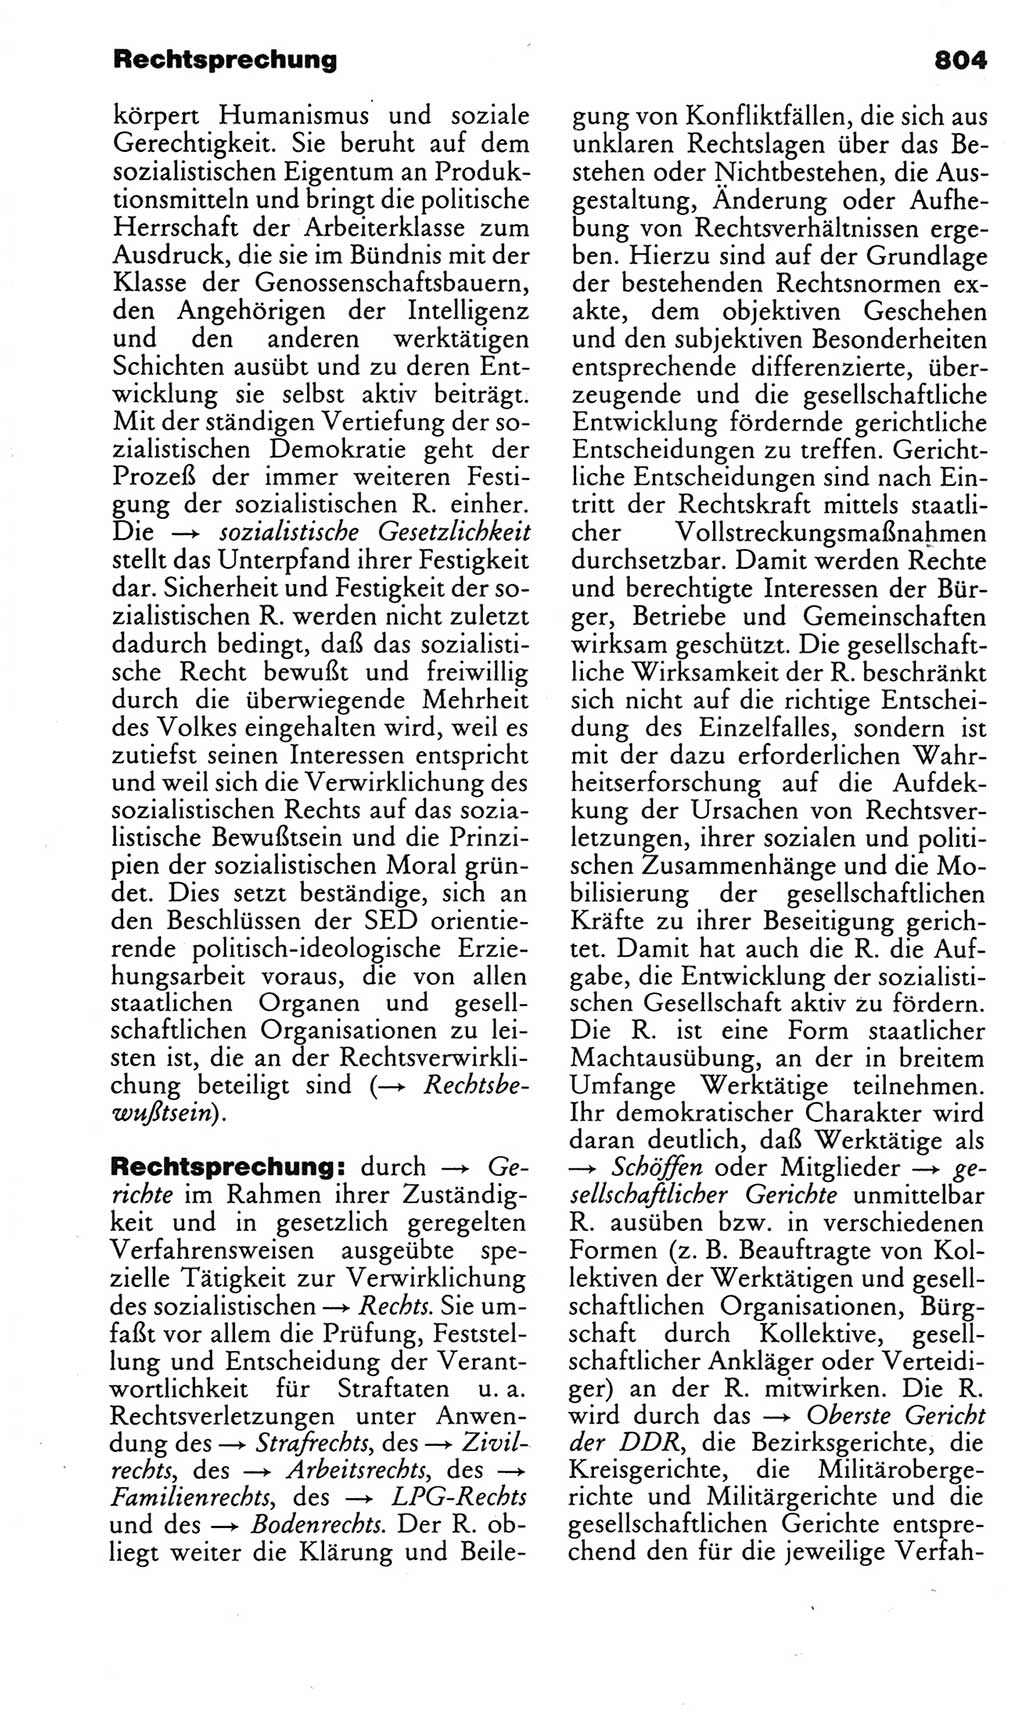 Kleines politisches Wörterbuch [Deutsche Demokratische Republik (DDR)] 1983, Seite 804 (Kl. pol. Wb. DDR 1983, S. 804)